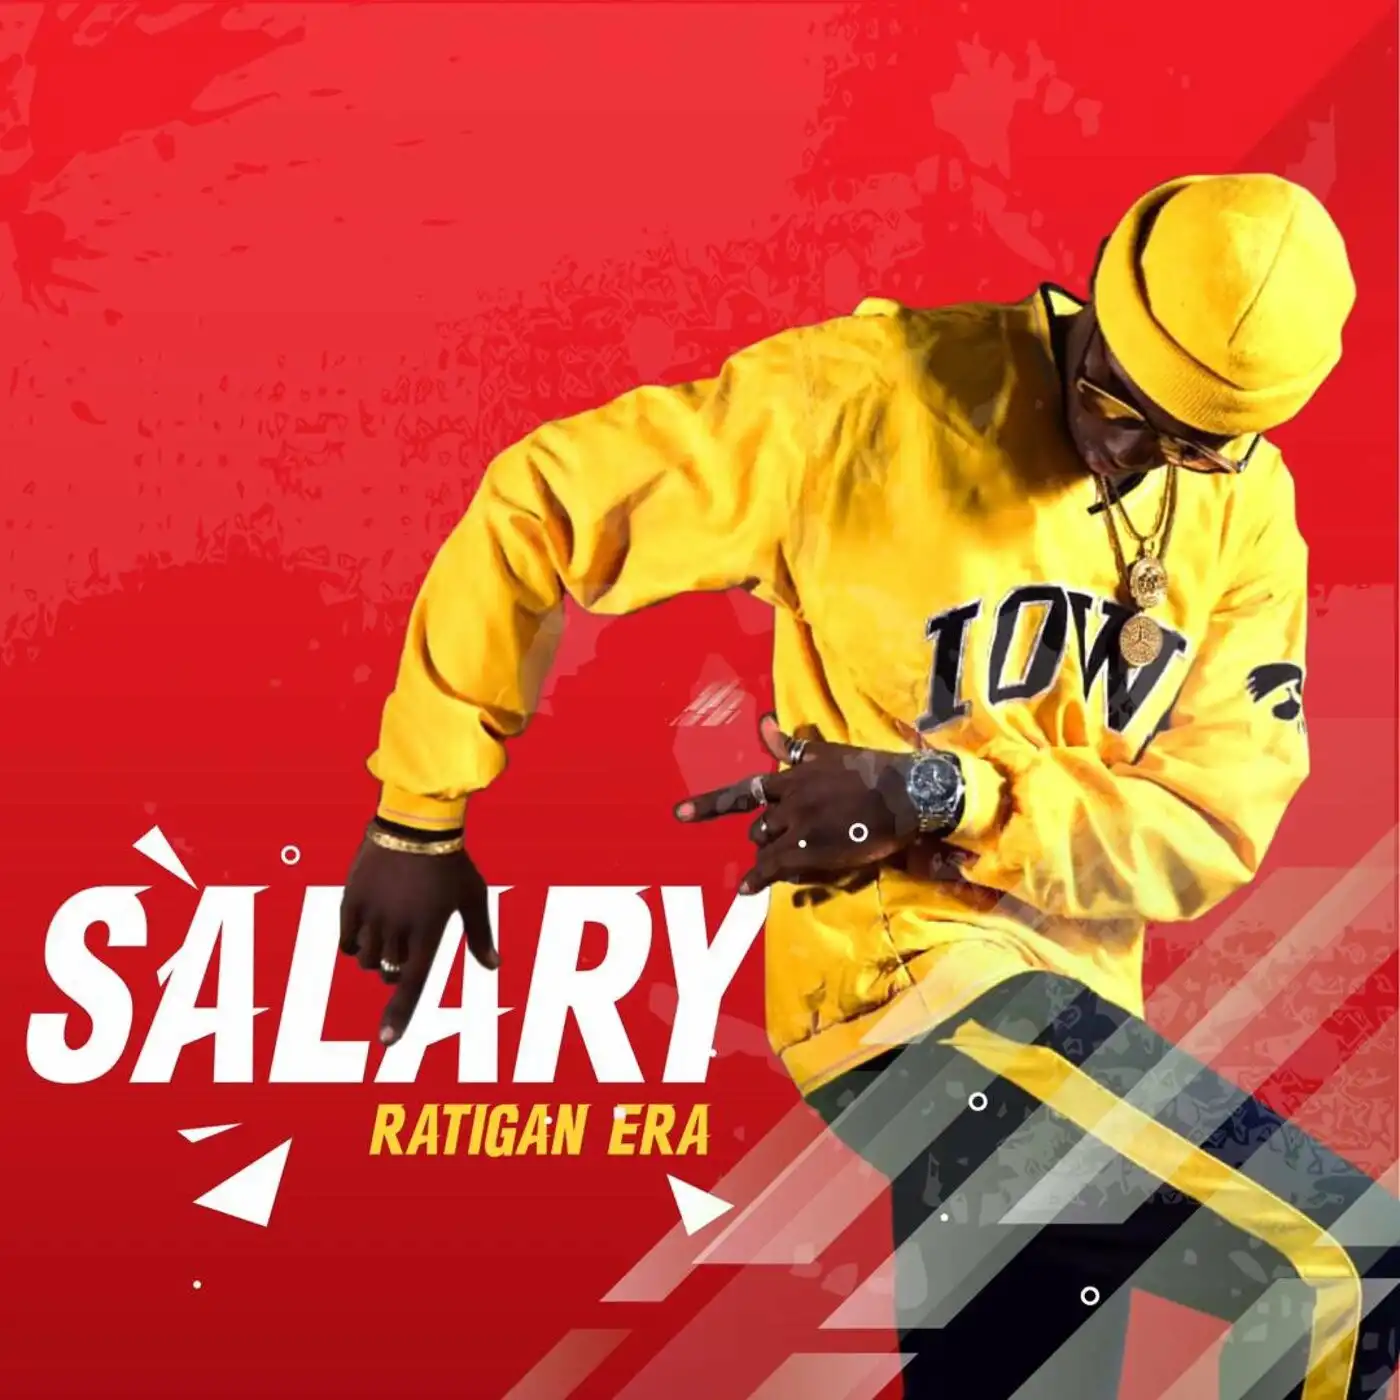 ratigan-era-salary-album-cover